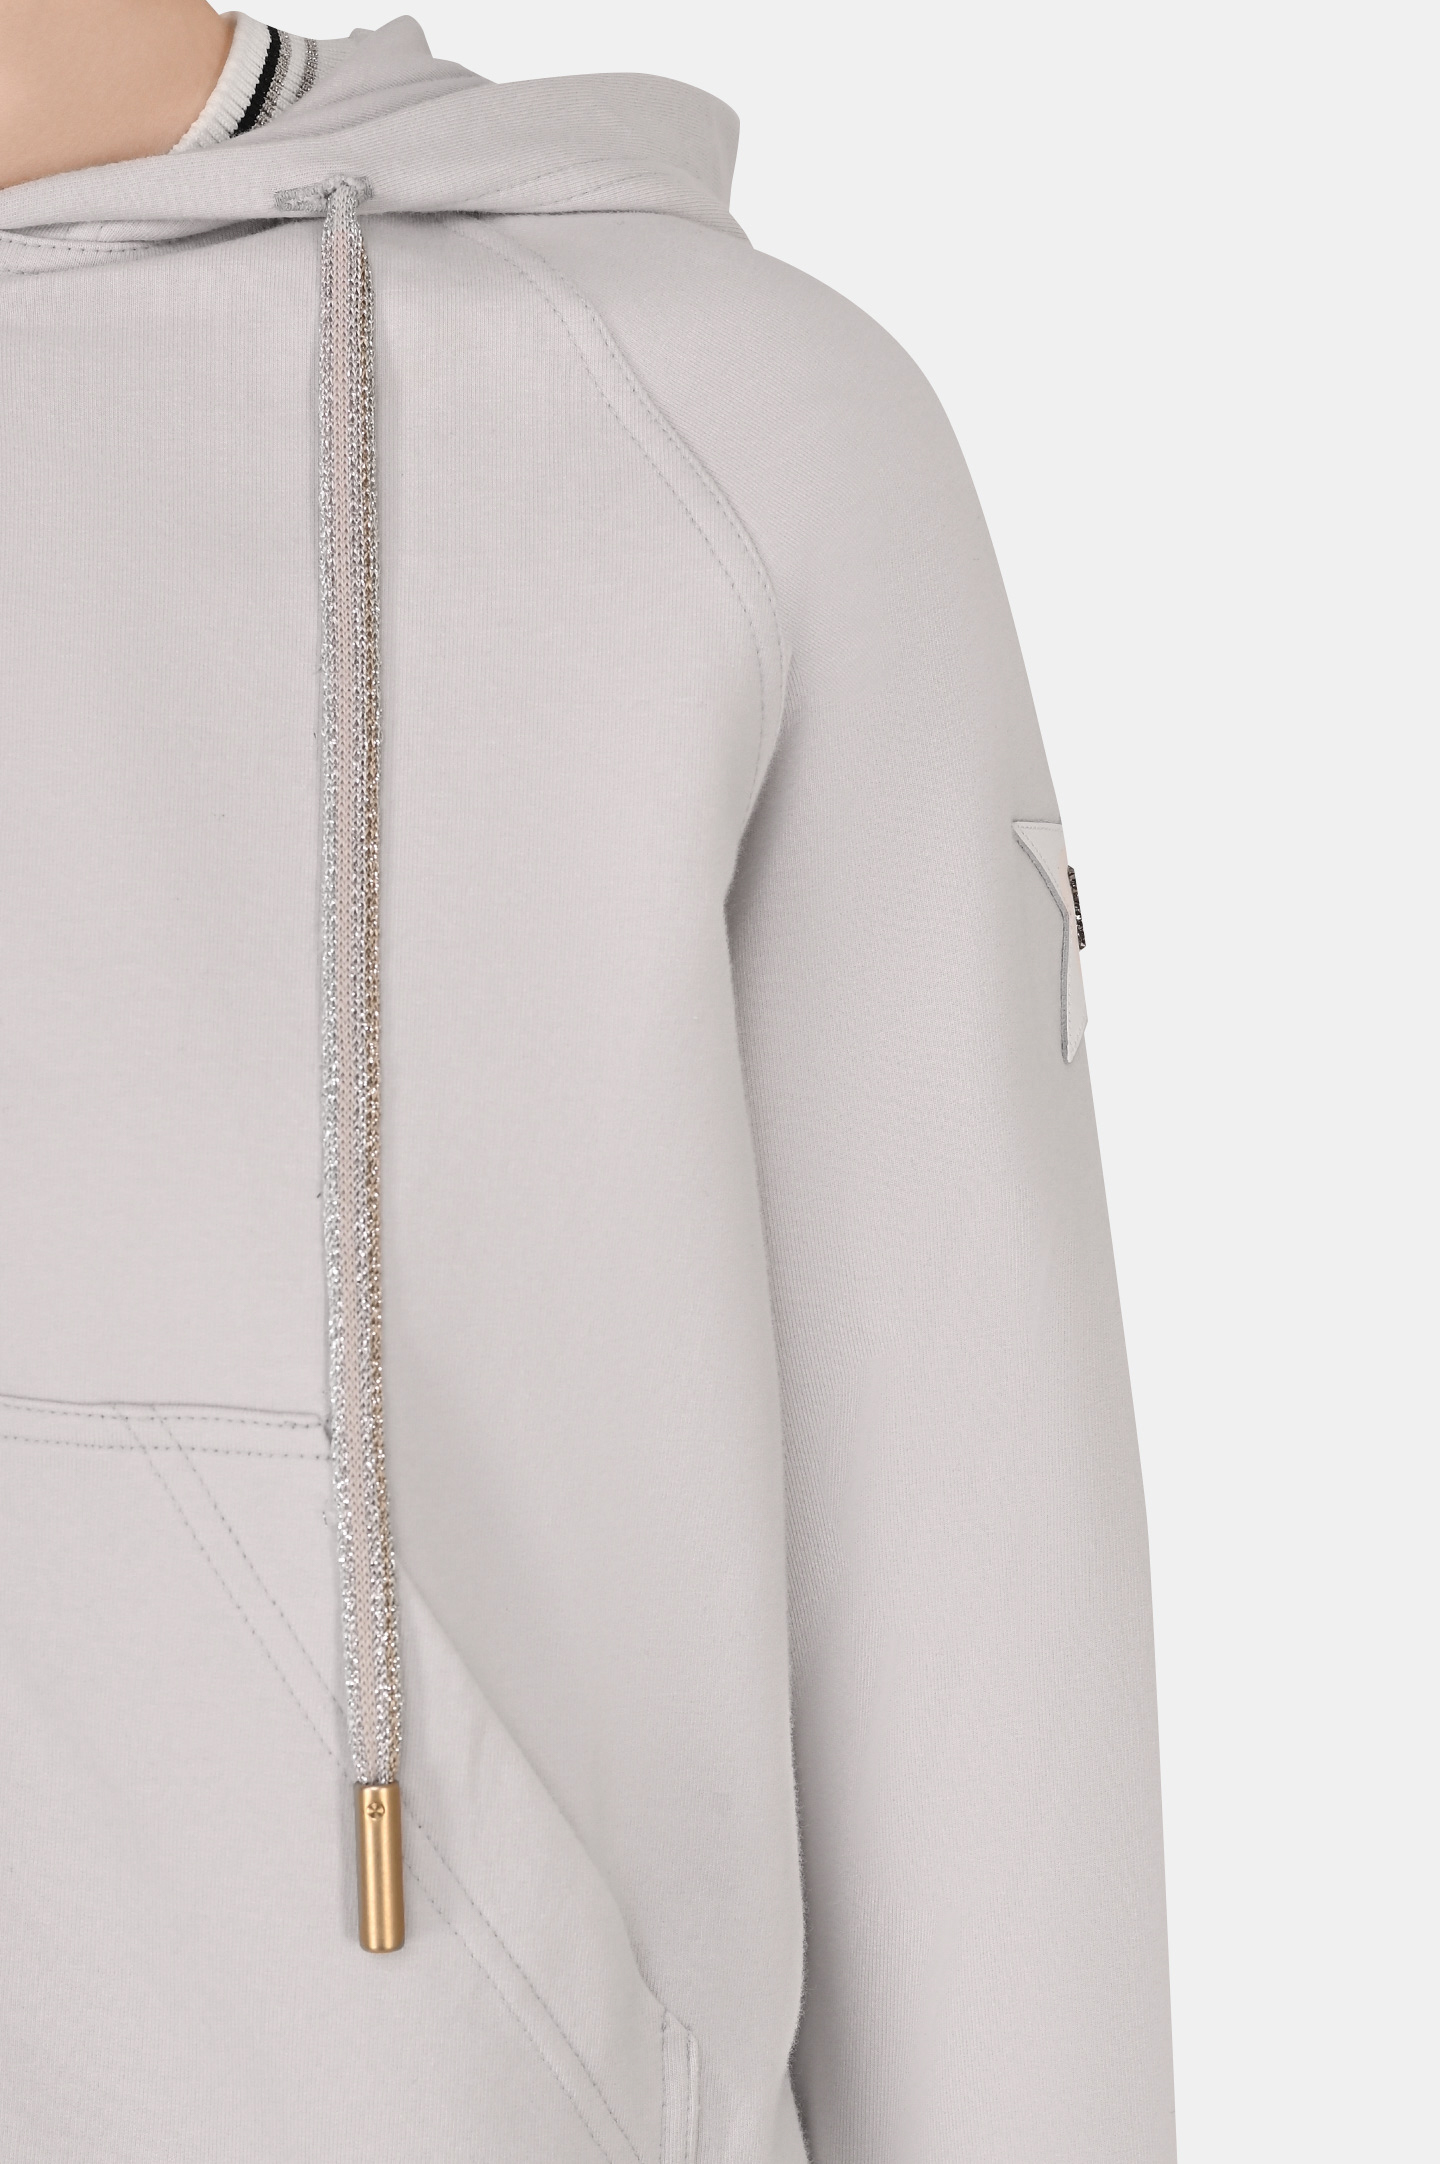 Куртка спорт LORENA ANTONIAZZI P2255FE06A, цвет: Серый, Женский